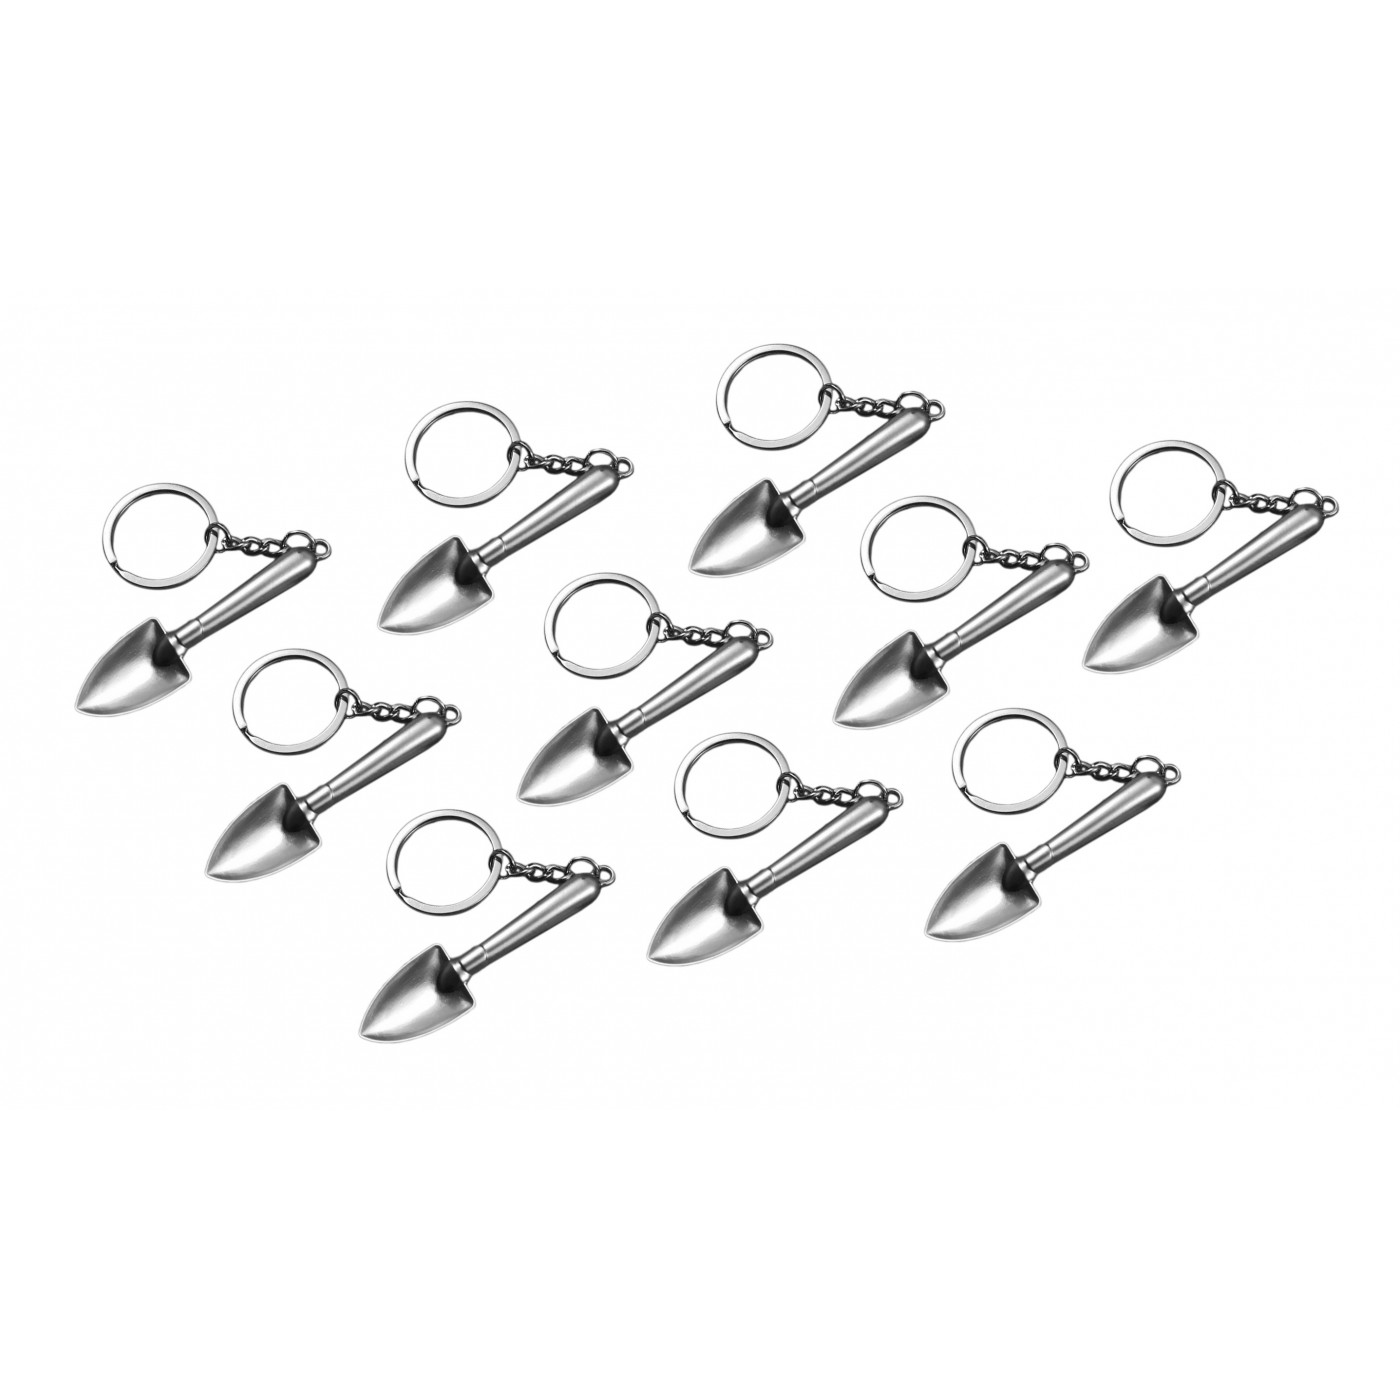 Lot de 10 porte-clés en métal (forme pelle, argent)